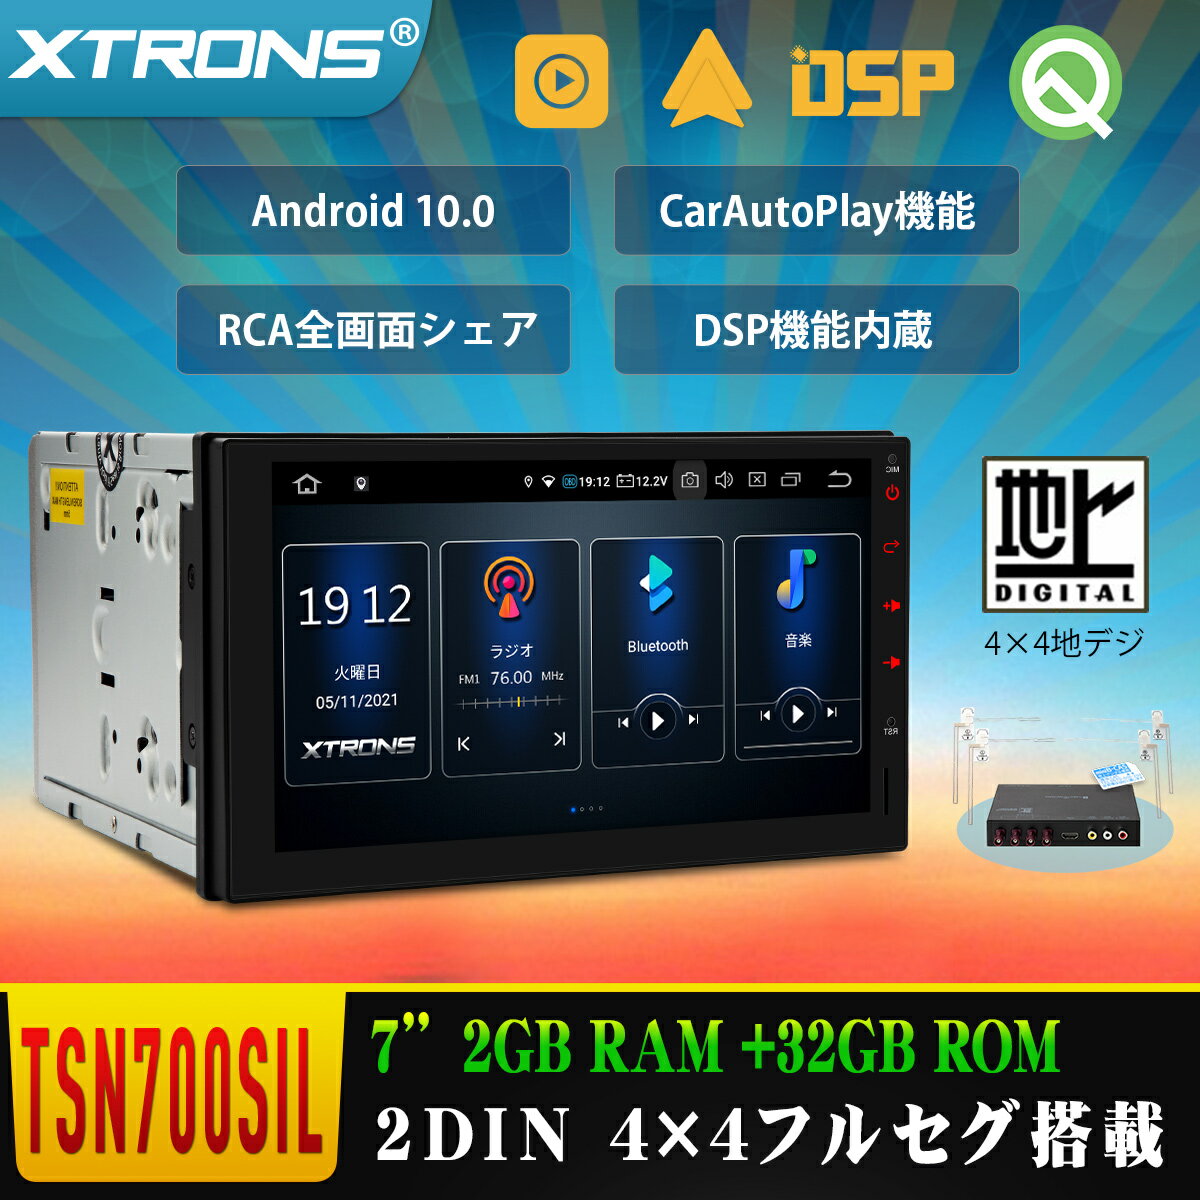 カーナビ フルセグ Android11 7インチ 2DIN 静電式車載PC 地デジ搭載 高画質 XTRONS カーステレオ カーオーディオ 4G WIFI CarPlay Android Auto OBD2 DVR対応 全画面シェアー（TN711SIL）